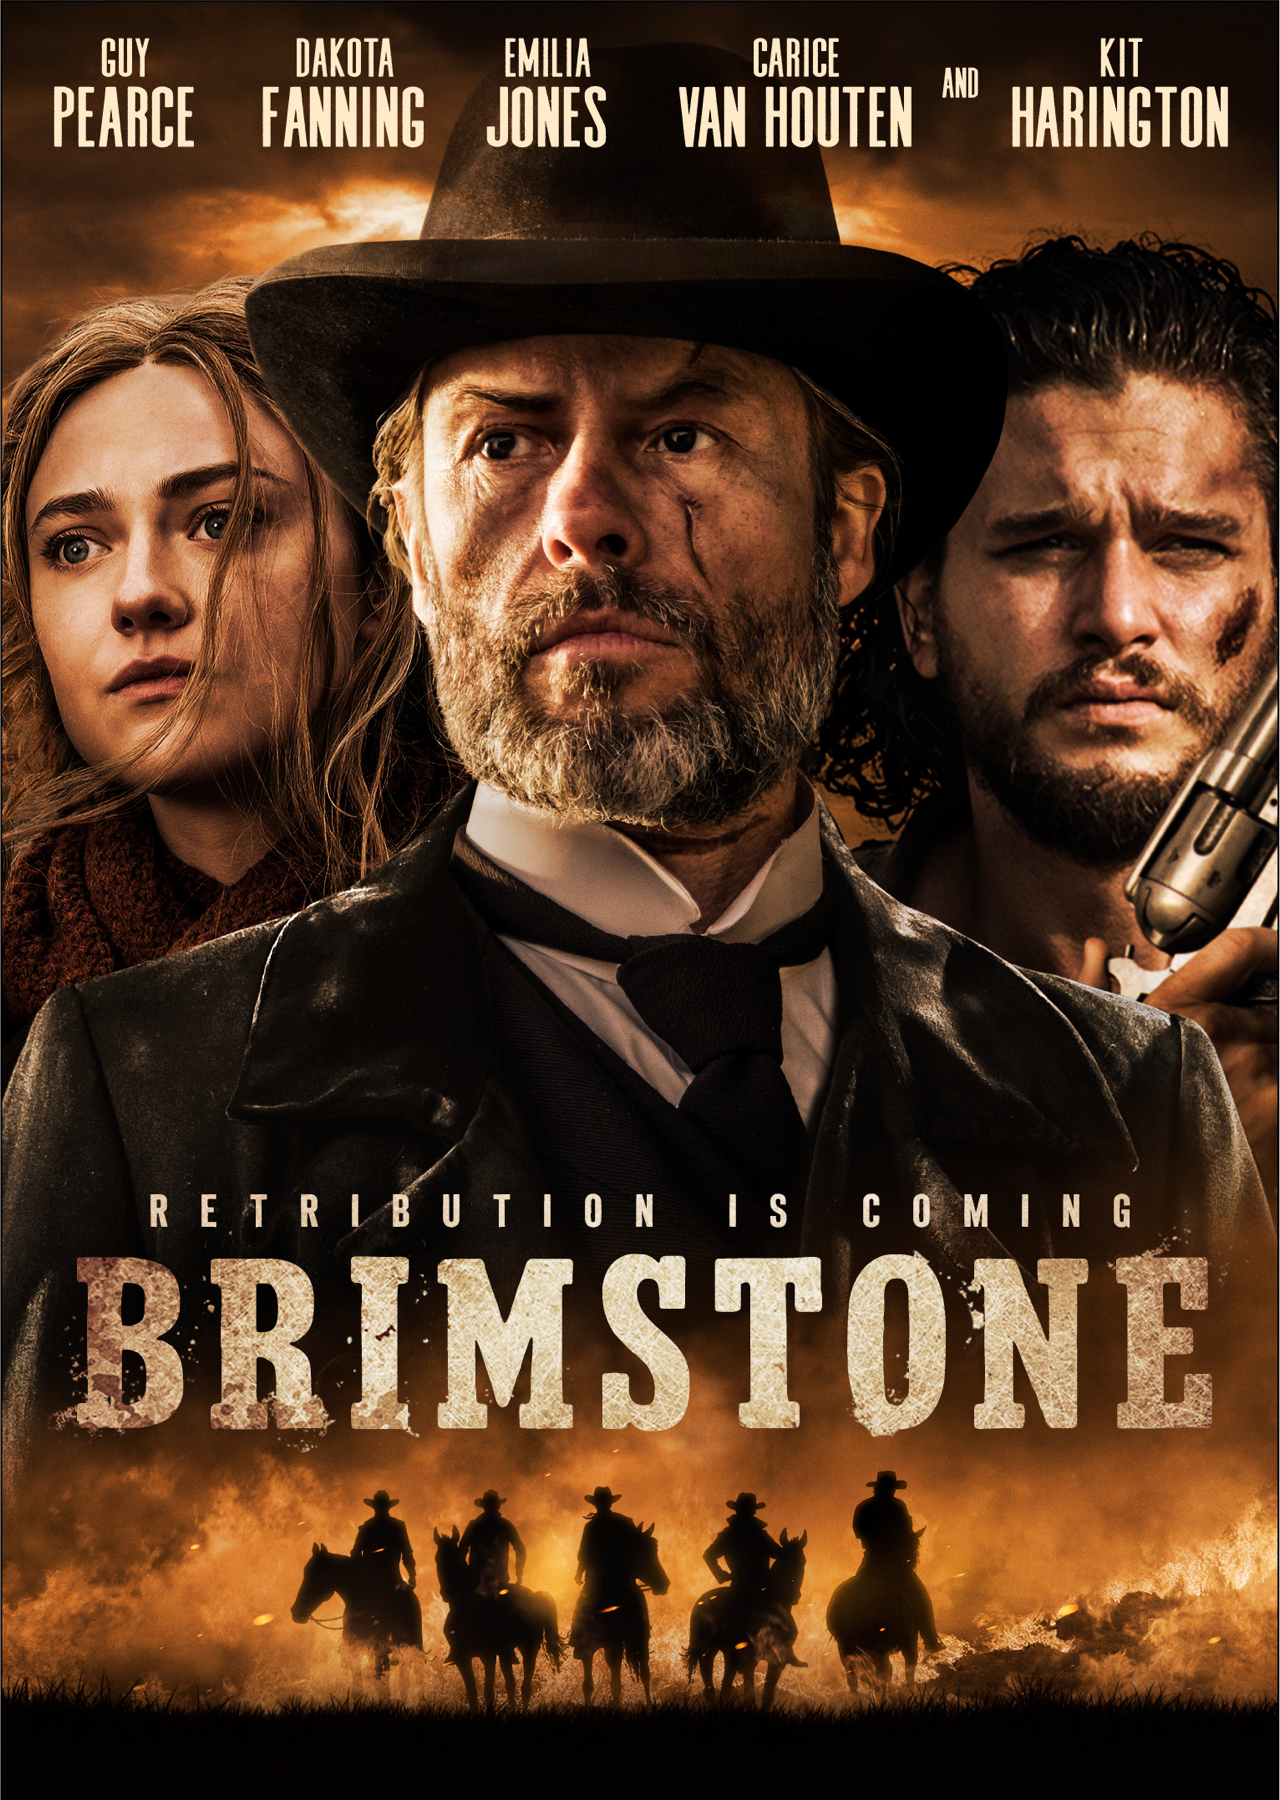 Brimstone Trailer: Dakota Fanning Stars in Western Thriller | Den of Geek